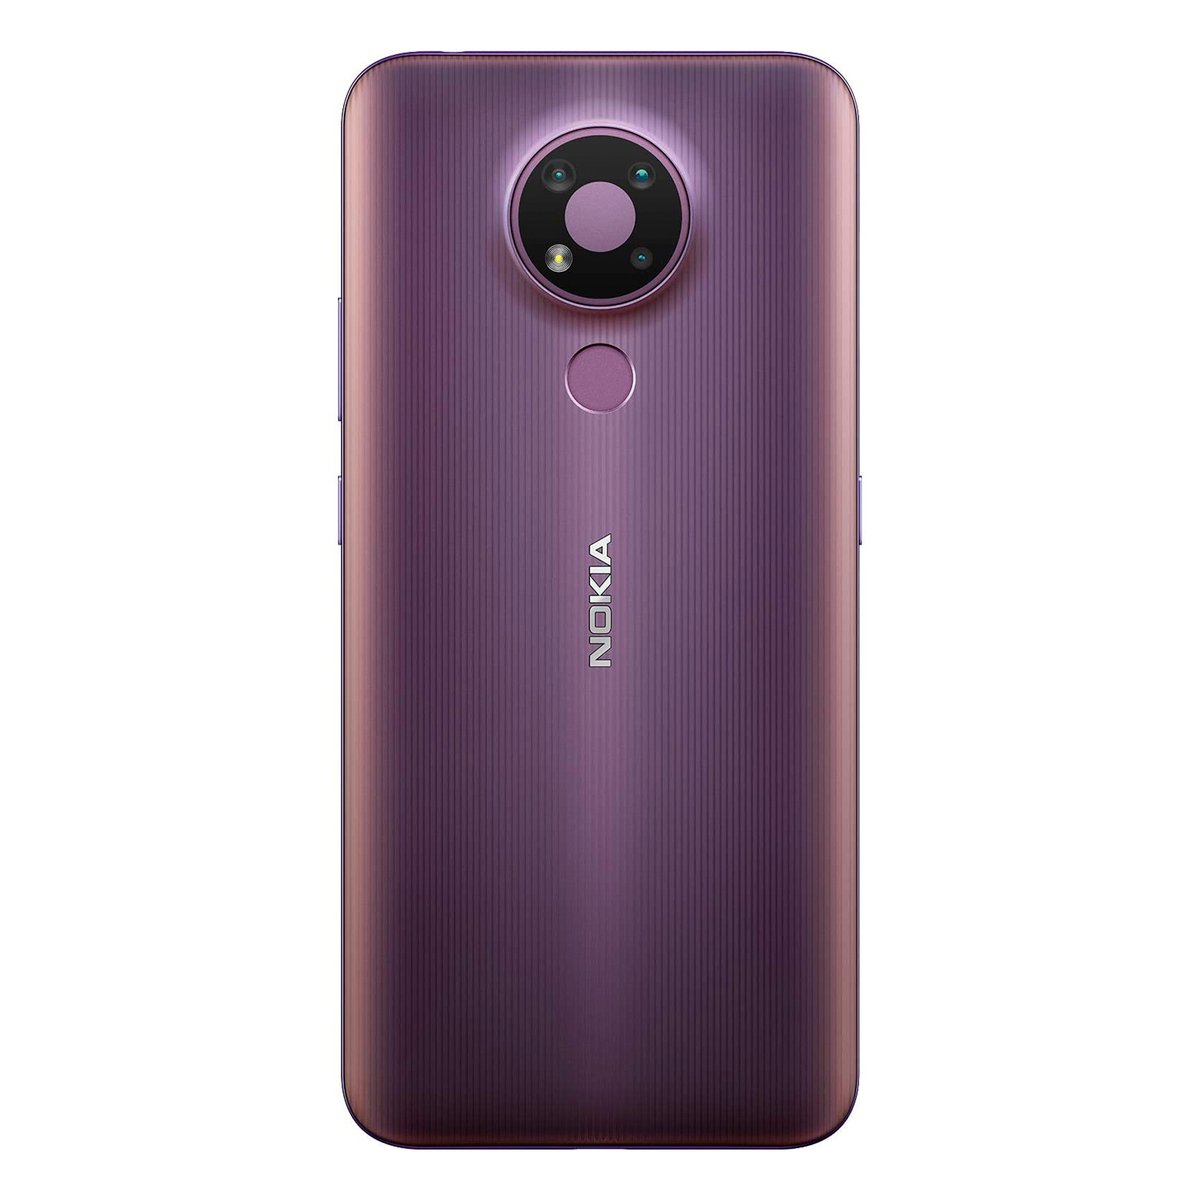 Nokia 3.4 TA-1288 64GB Purple